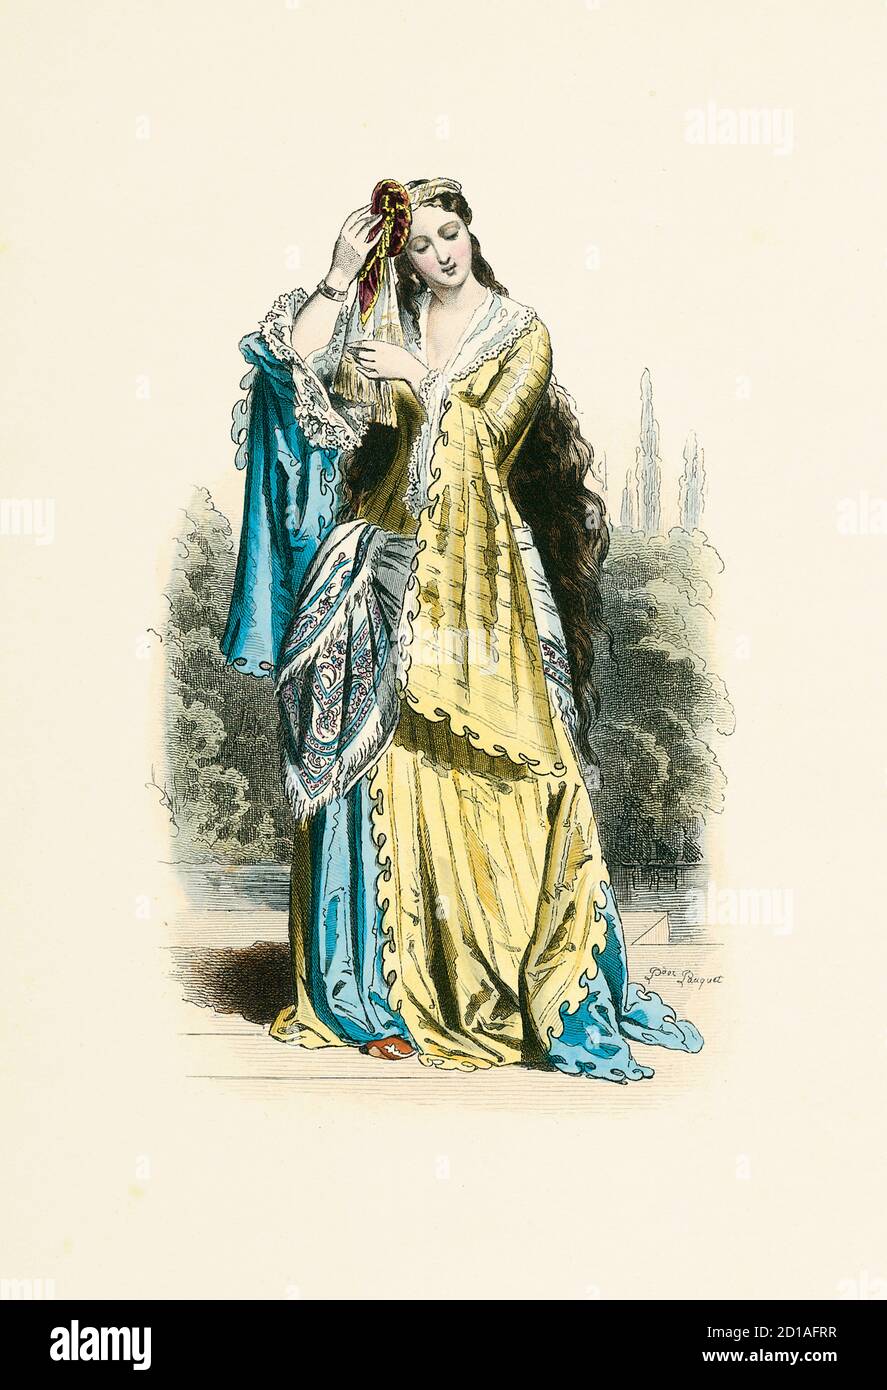 Porträt der griechischen Prinzessin 1820, handkolorierter Stich von H. Pauquet. Veröffentlicht im Buch Modes et Costumes Historiques Dessines et Graves Stockfoto